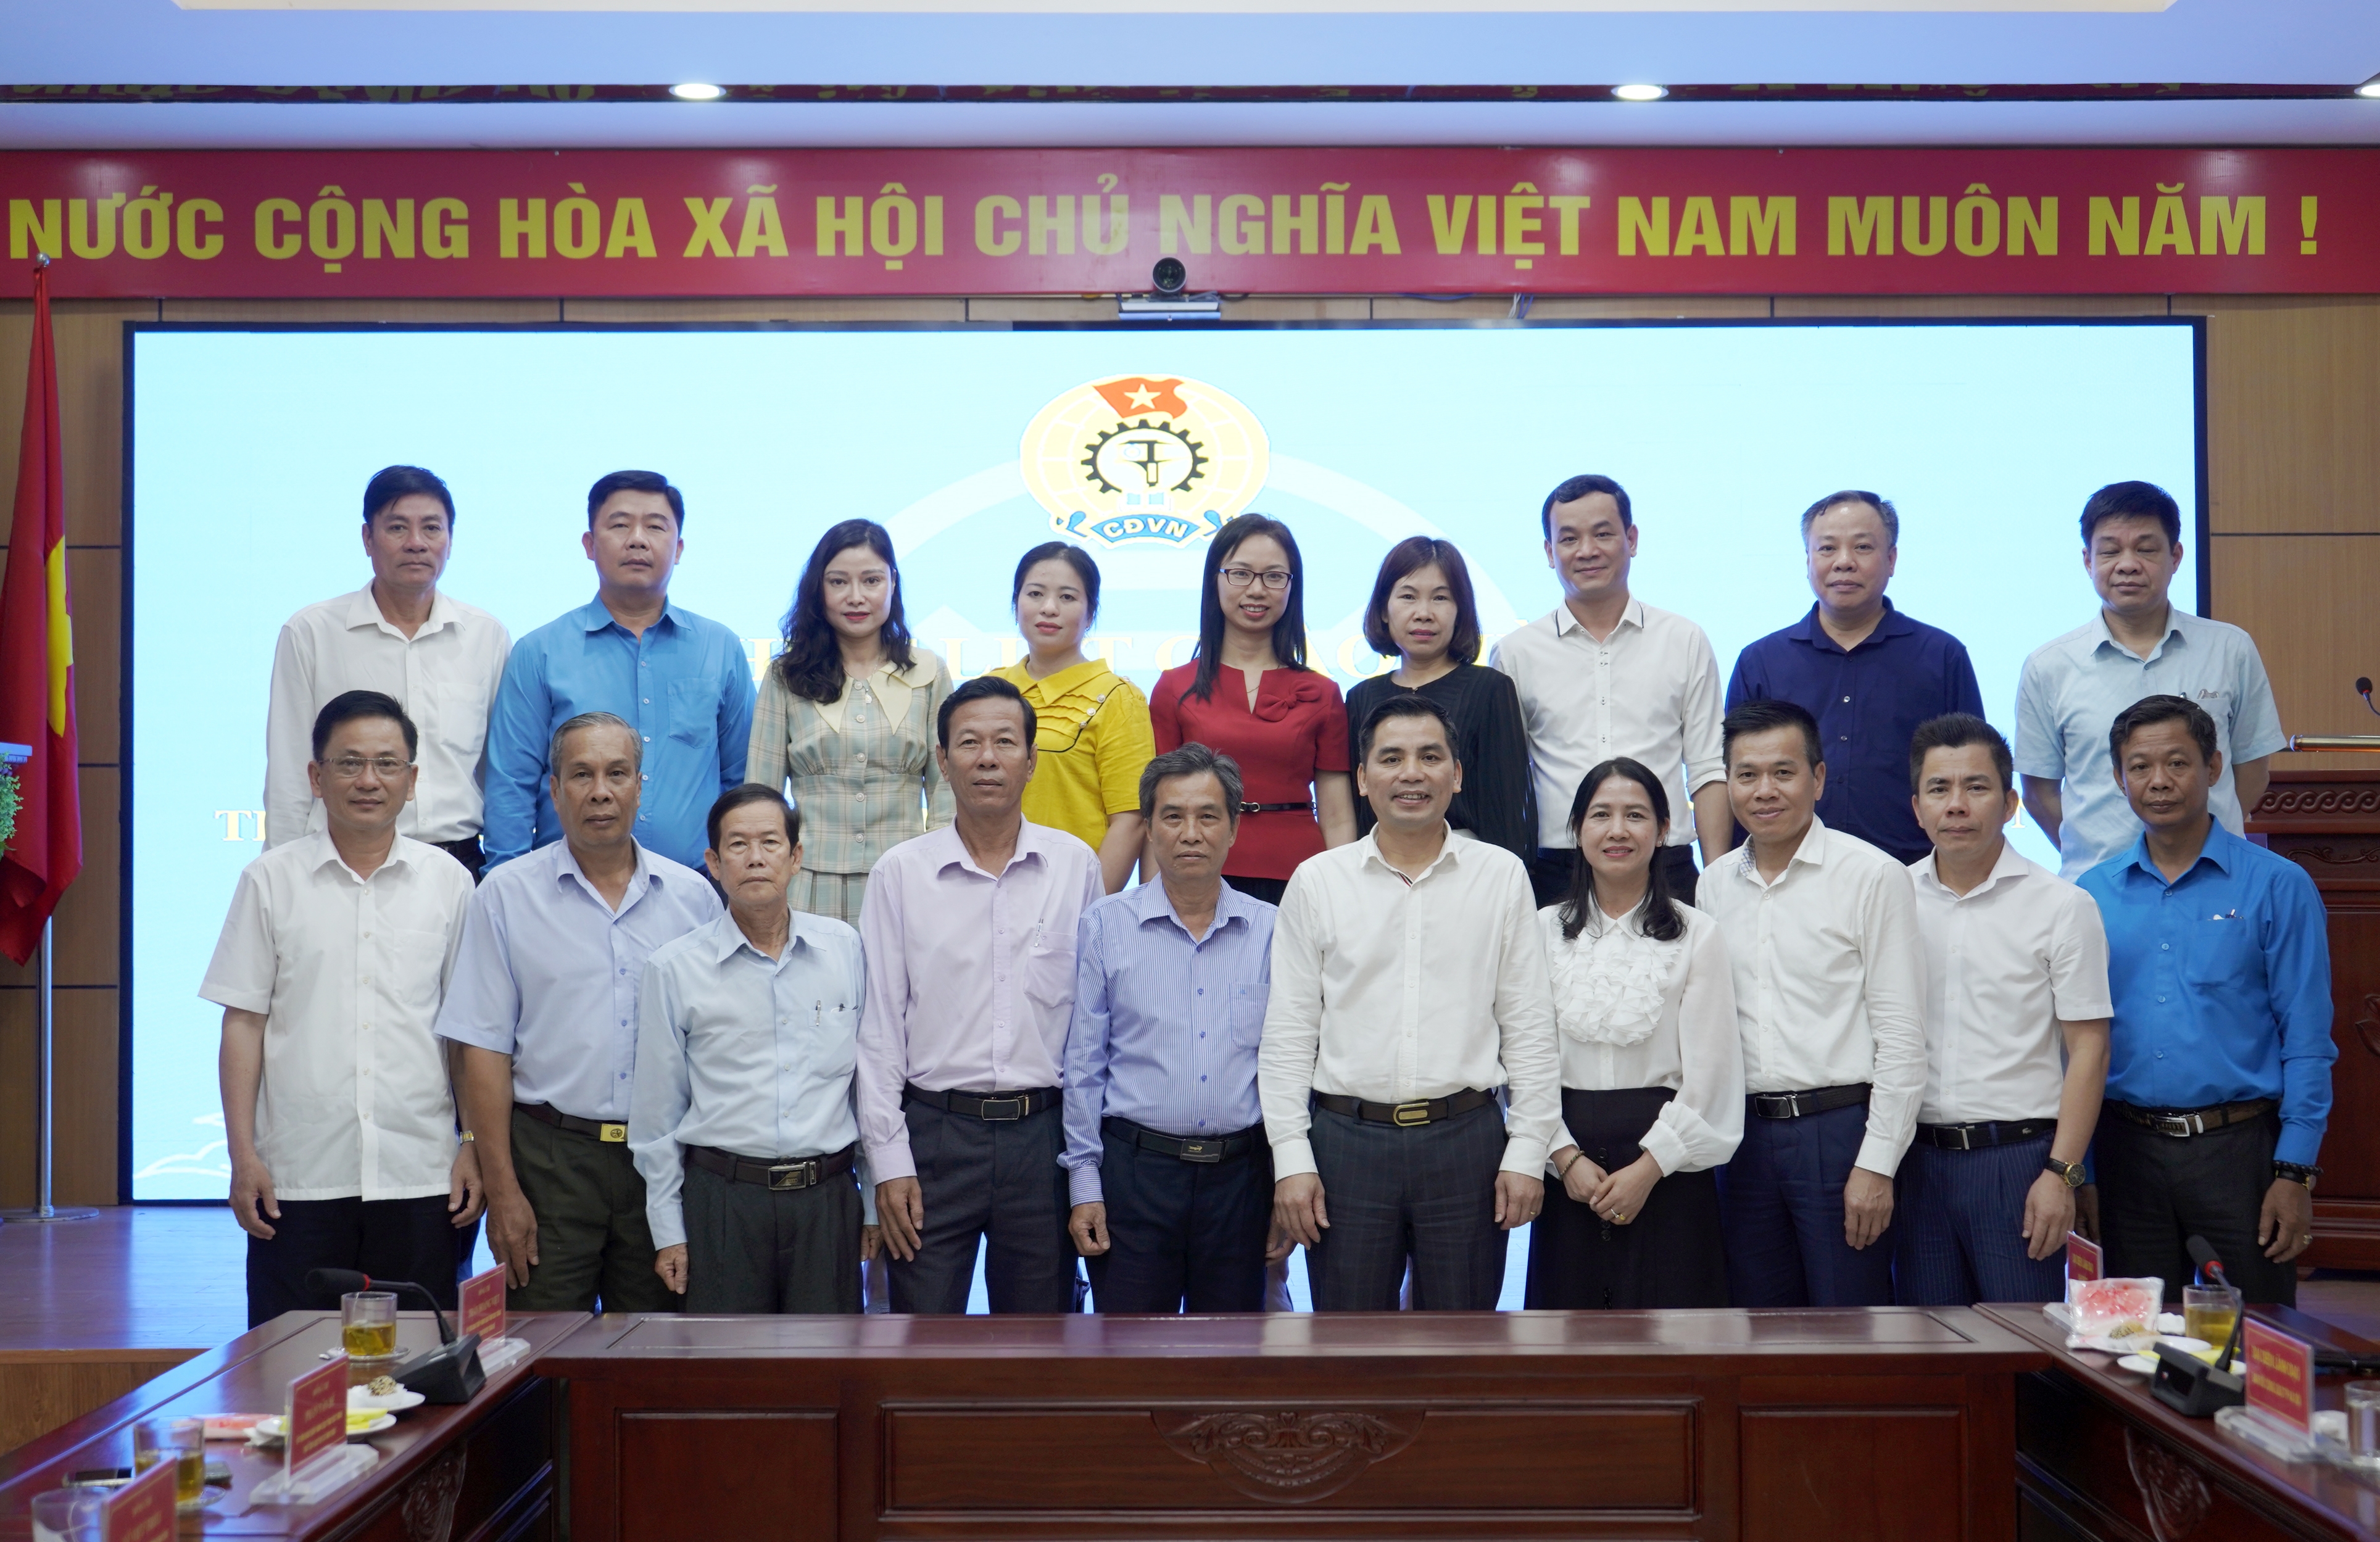 LĐLĐ thành phố Hà Nội và LĐLĐ tỉnh Sóc Trăng trao đổi kinh nghiệm hoạt động công đoàn